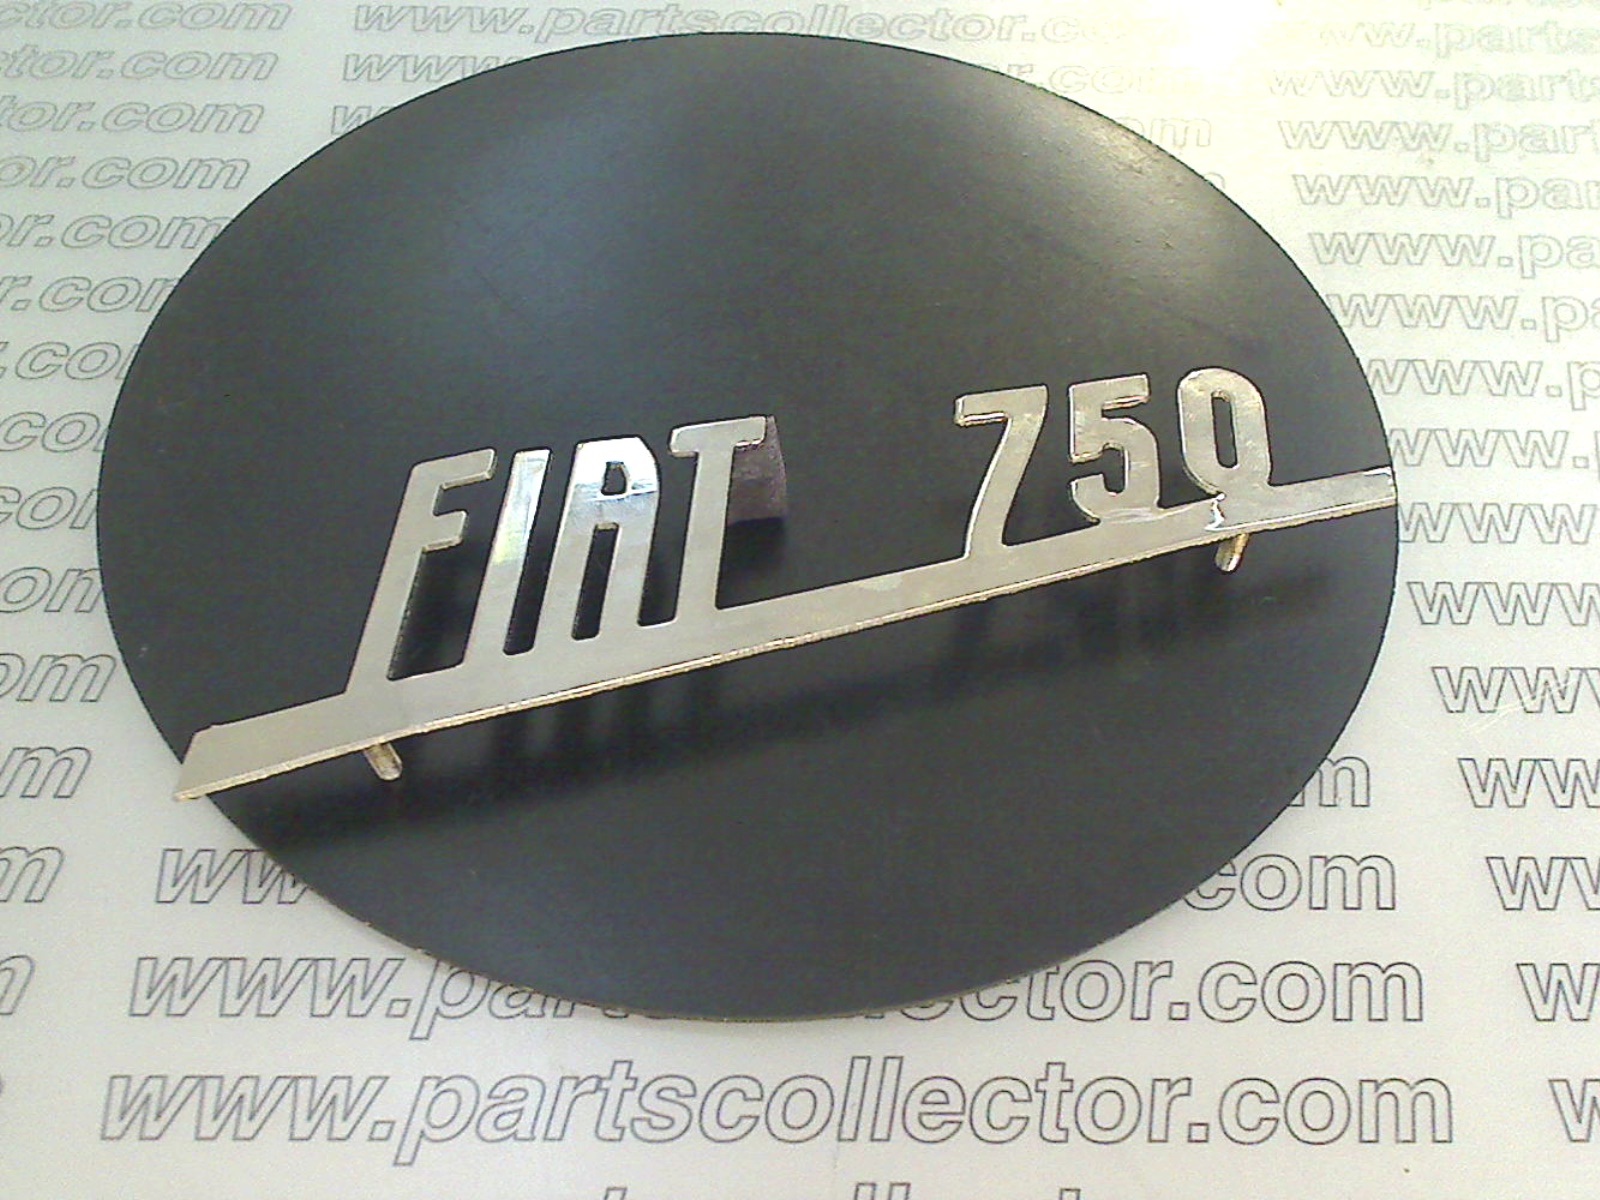 SCRITTA FIAT 750